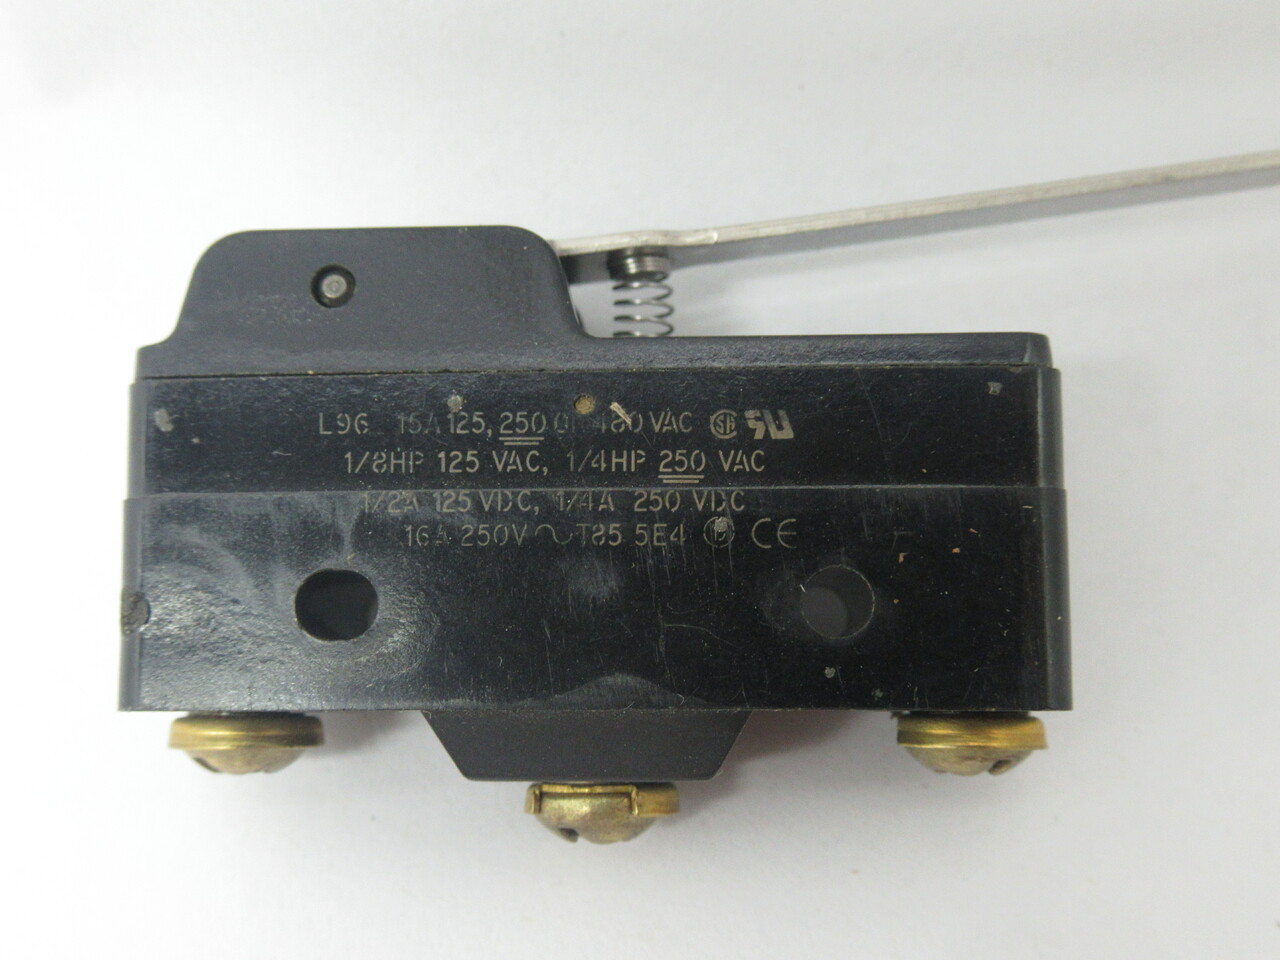 Microswitch BZ-2RW863-A2 Limit Switch w/6" Lever 15A@125,250 or 480VAC USED